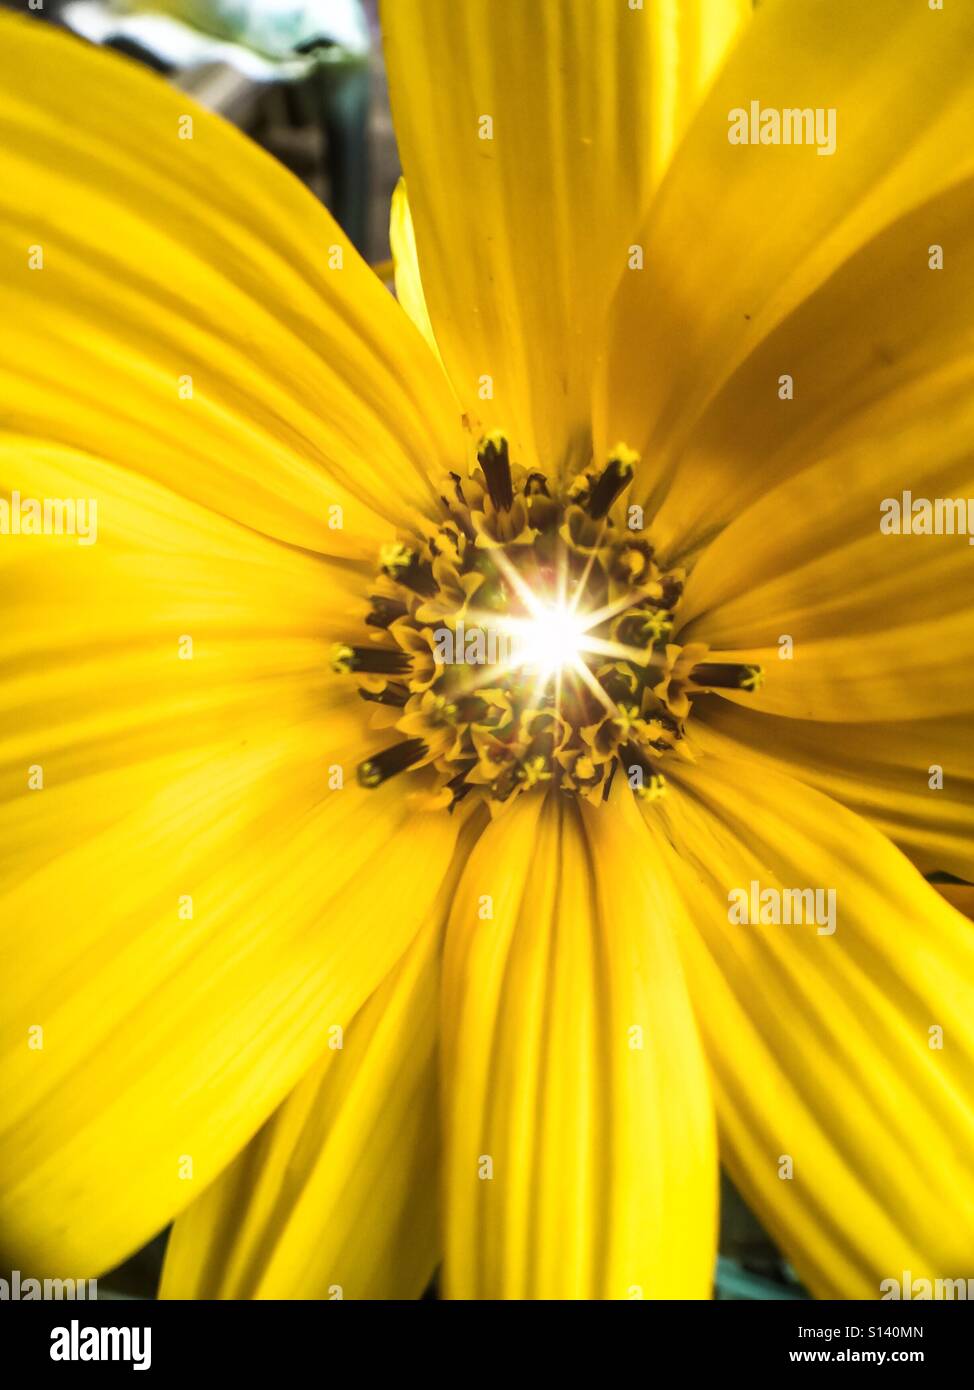 Point de lumière, figurativement, littéralement, et organiquement. Le Centre d'une fleur jaune montre une étincelle, Ontario, Canada Banque D'Images